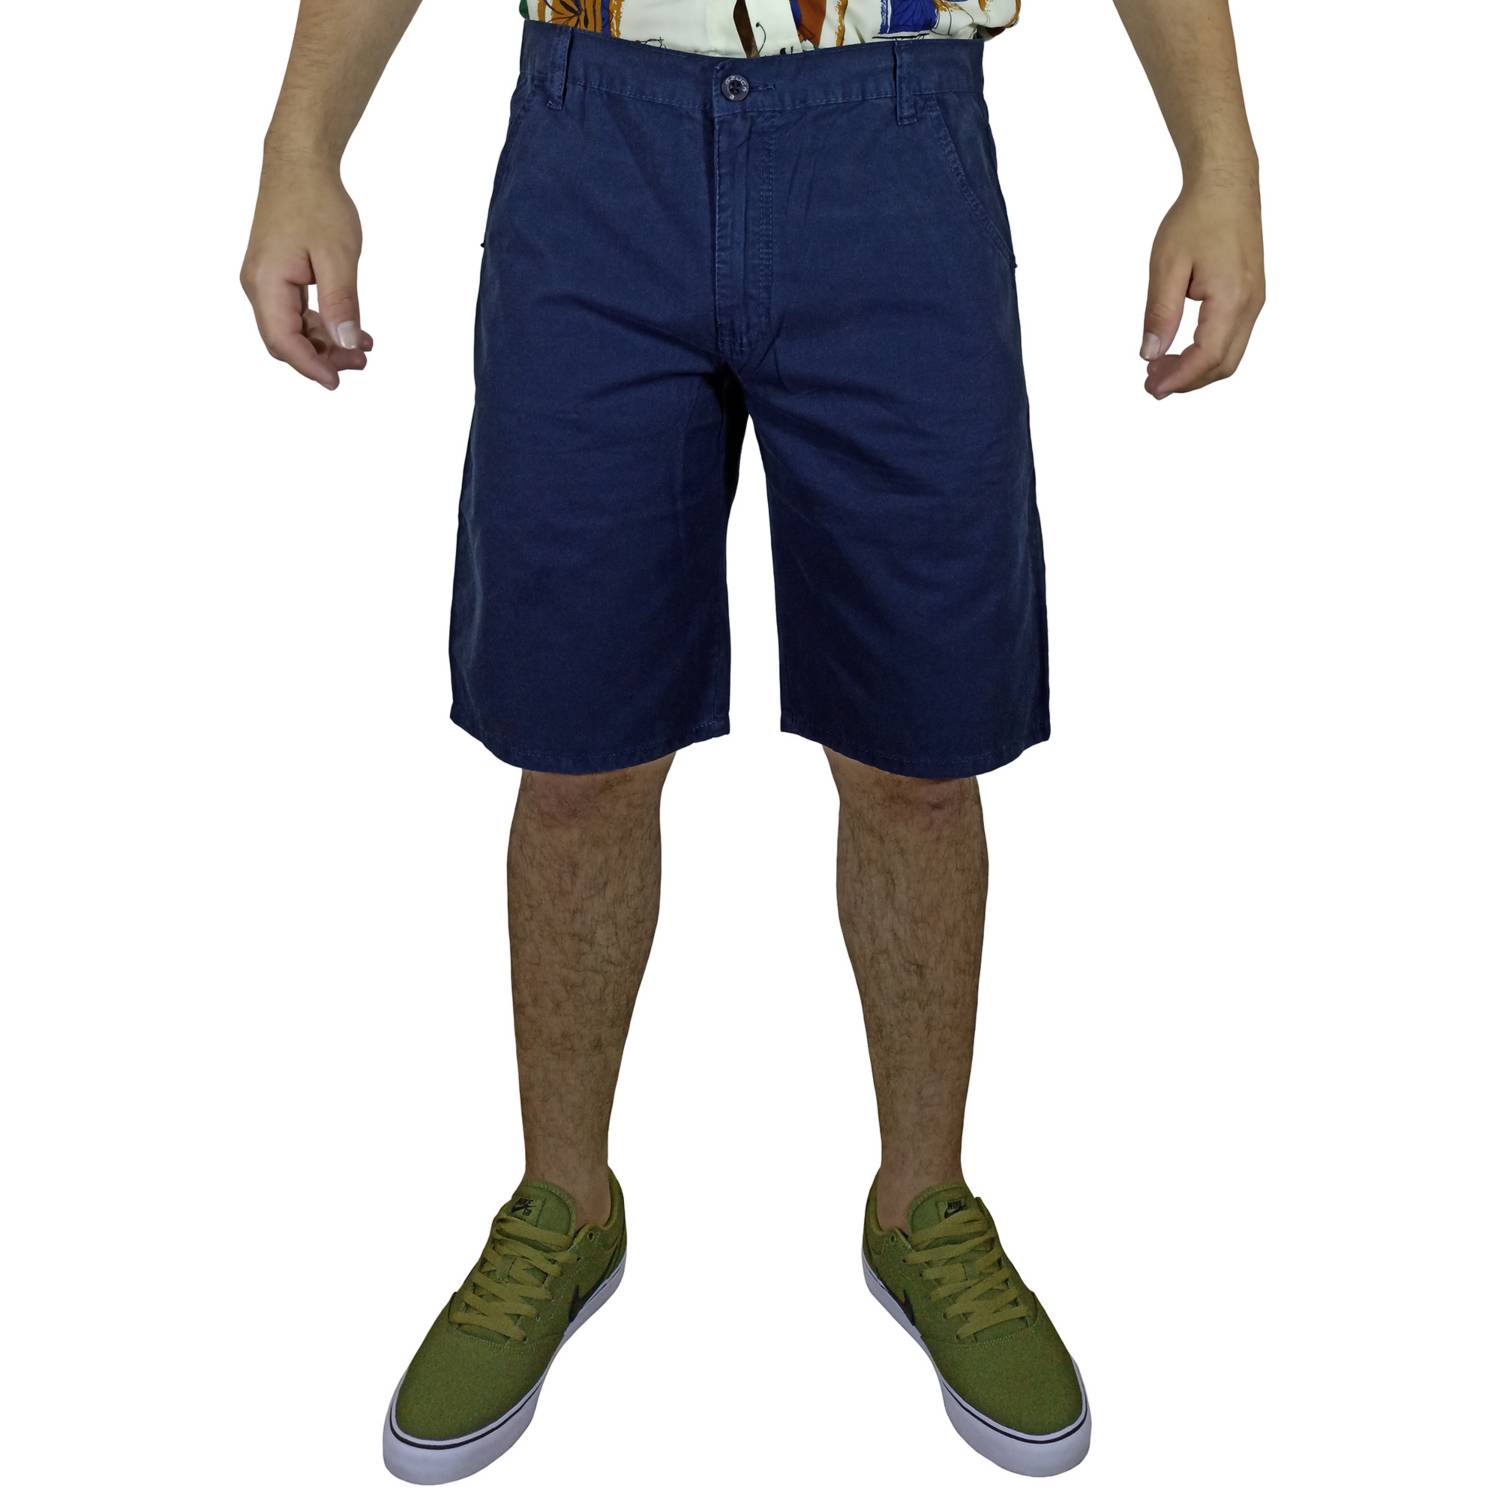 Pantalón Drill Moda Para Hombre - Azul GENERICO